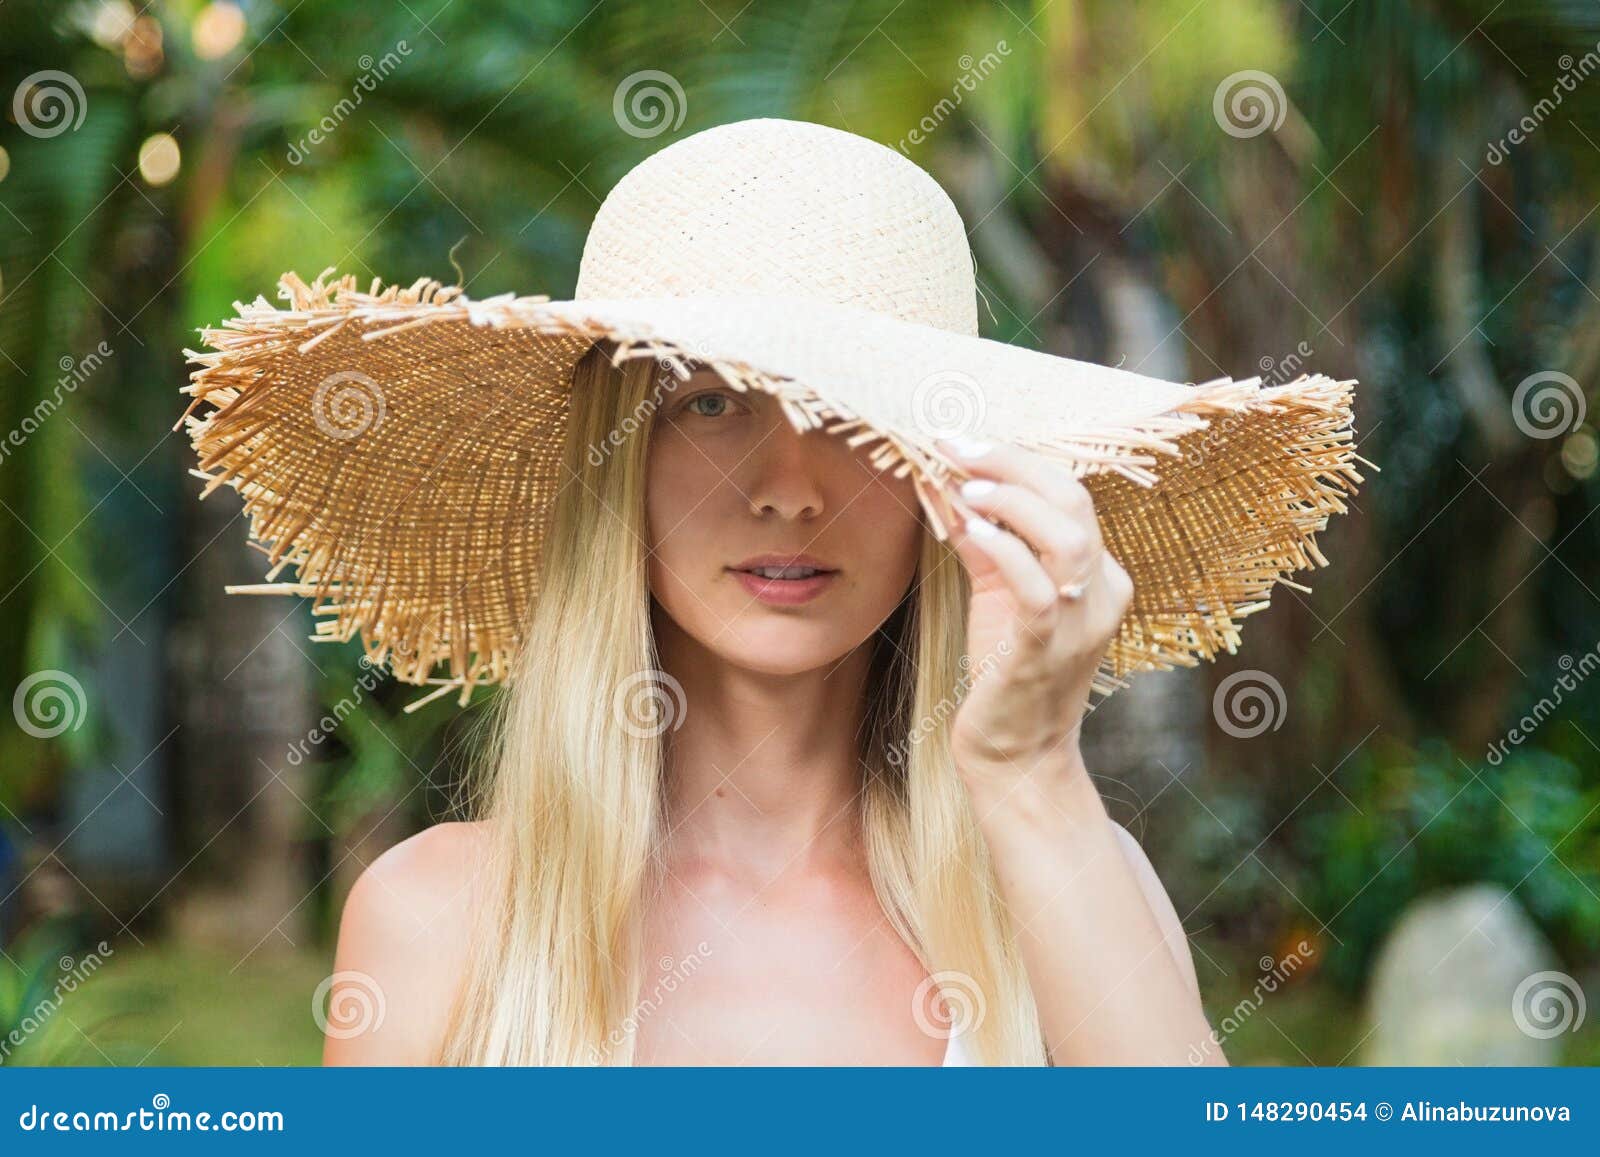 SUPERLOVE Sombrero de Vaquero de señora Sombrero de Mujer de Verano Nuevo Europeo y Americano Verano Lino al Aire Libre Cuerda Occidental Sombrero de Vaquero de un Solo Rostro Sombrero Casual 